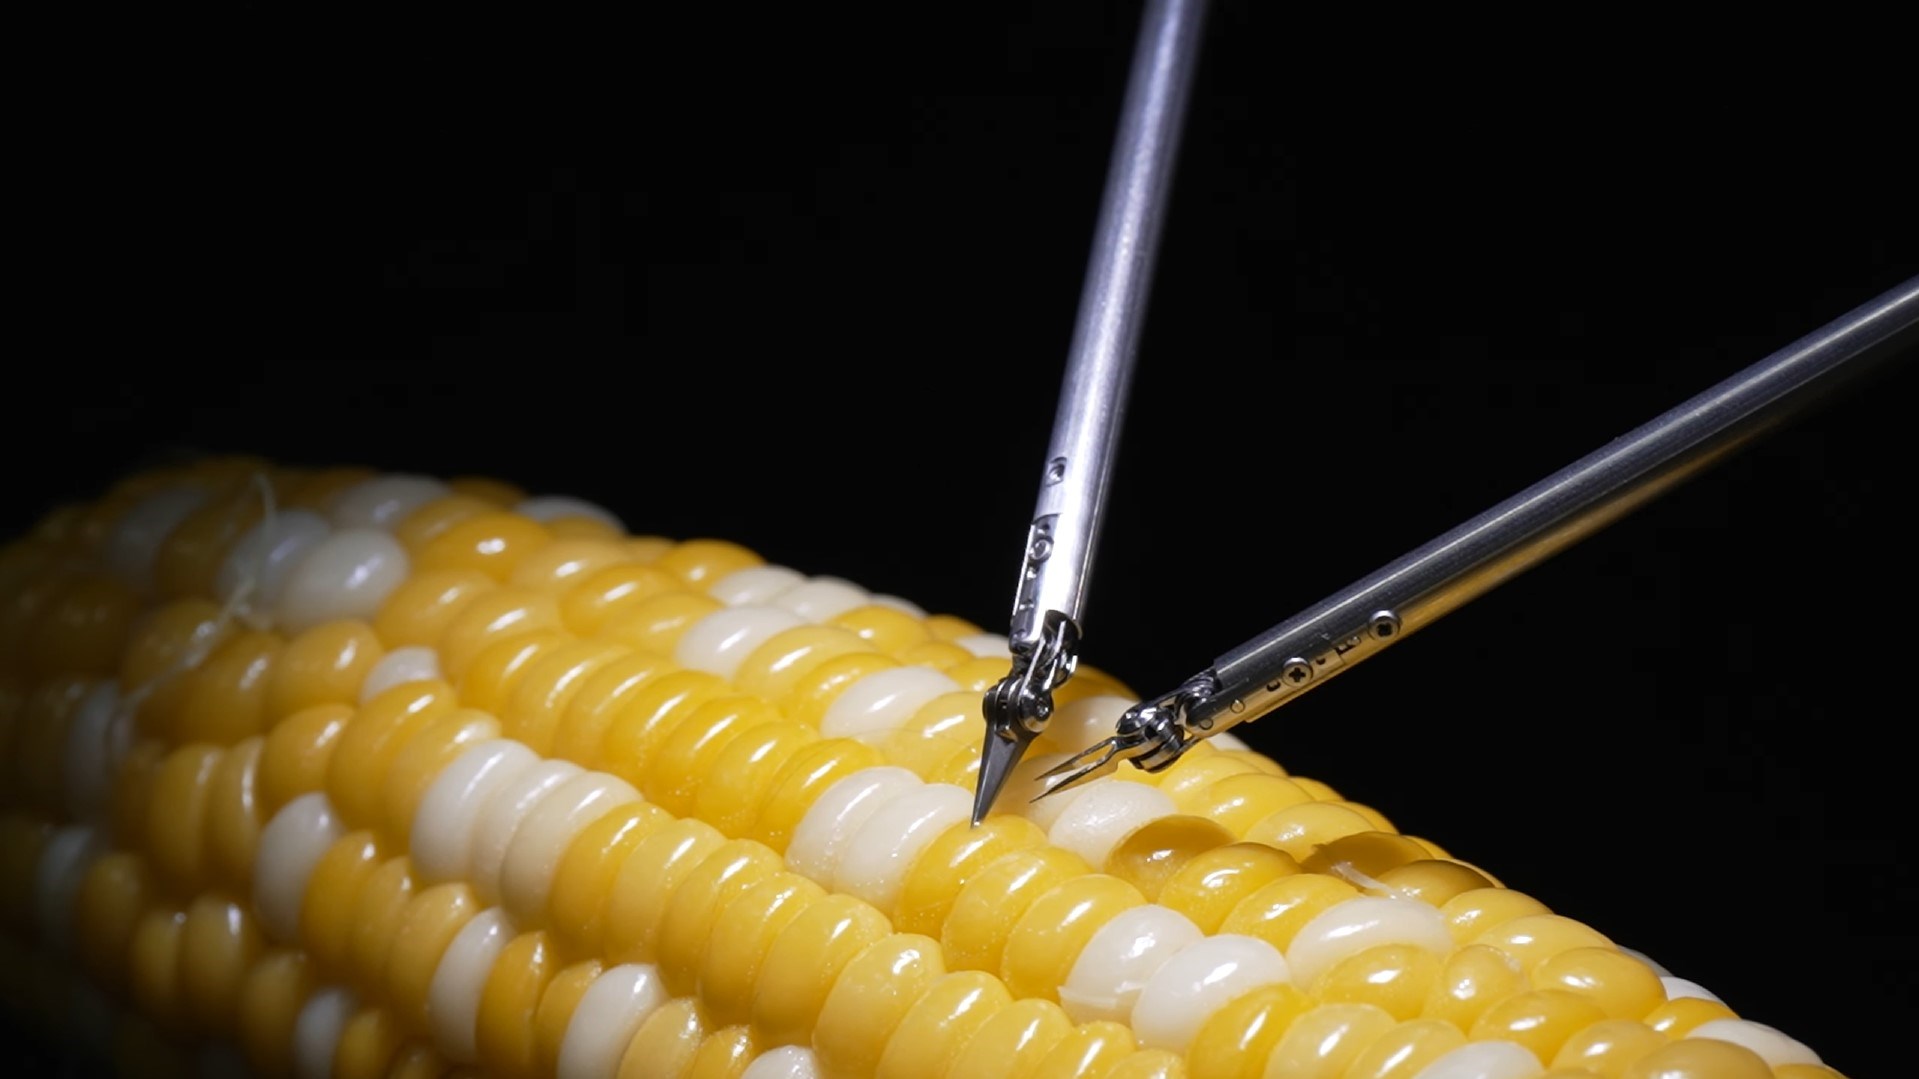 Sony’nin hassas mikrocerrahi robotu mısır tanesini dikebiliyor